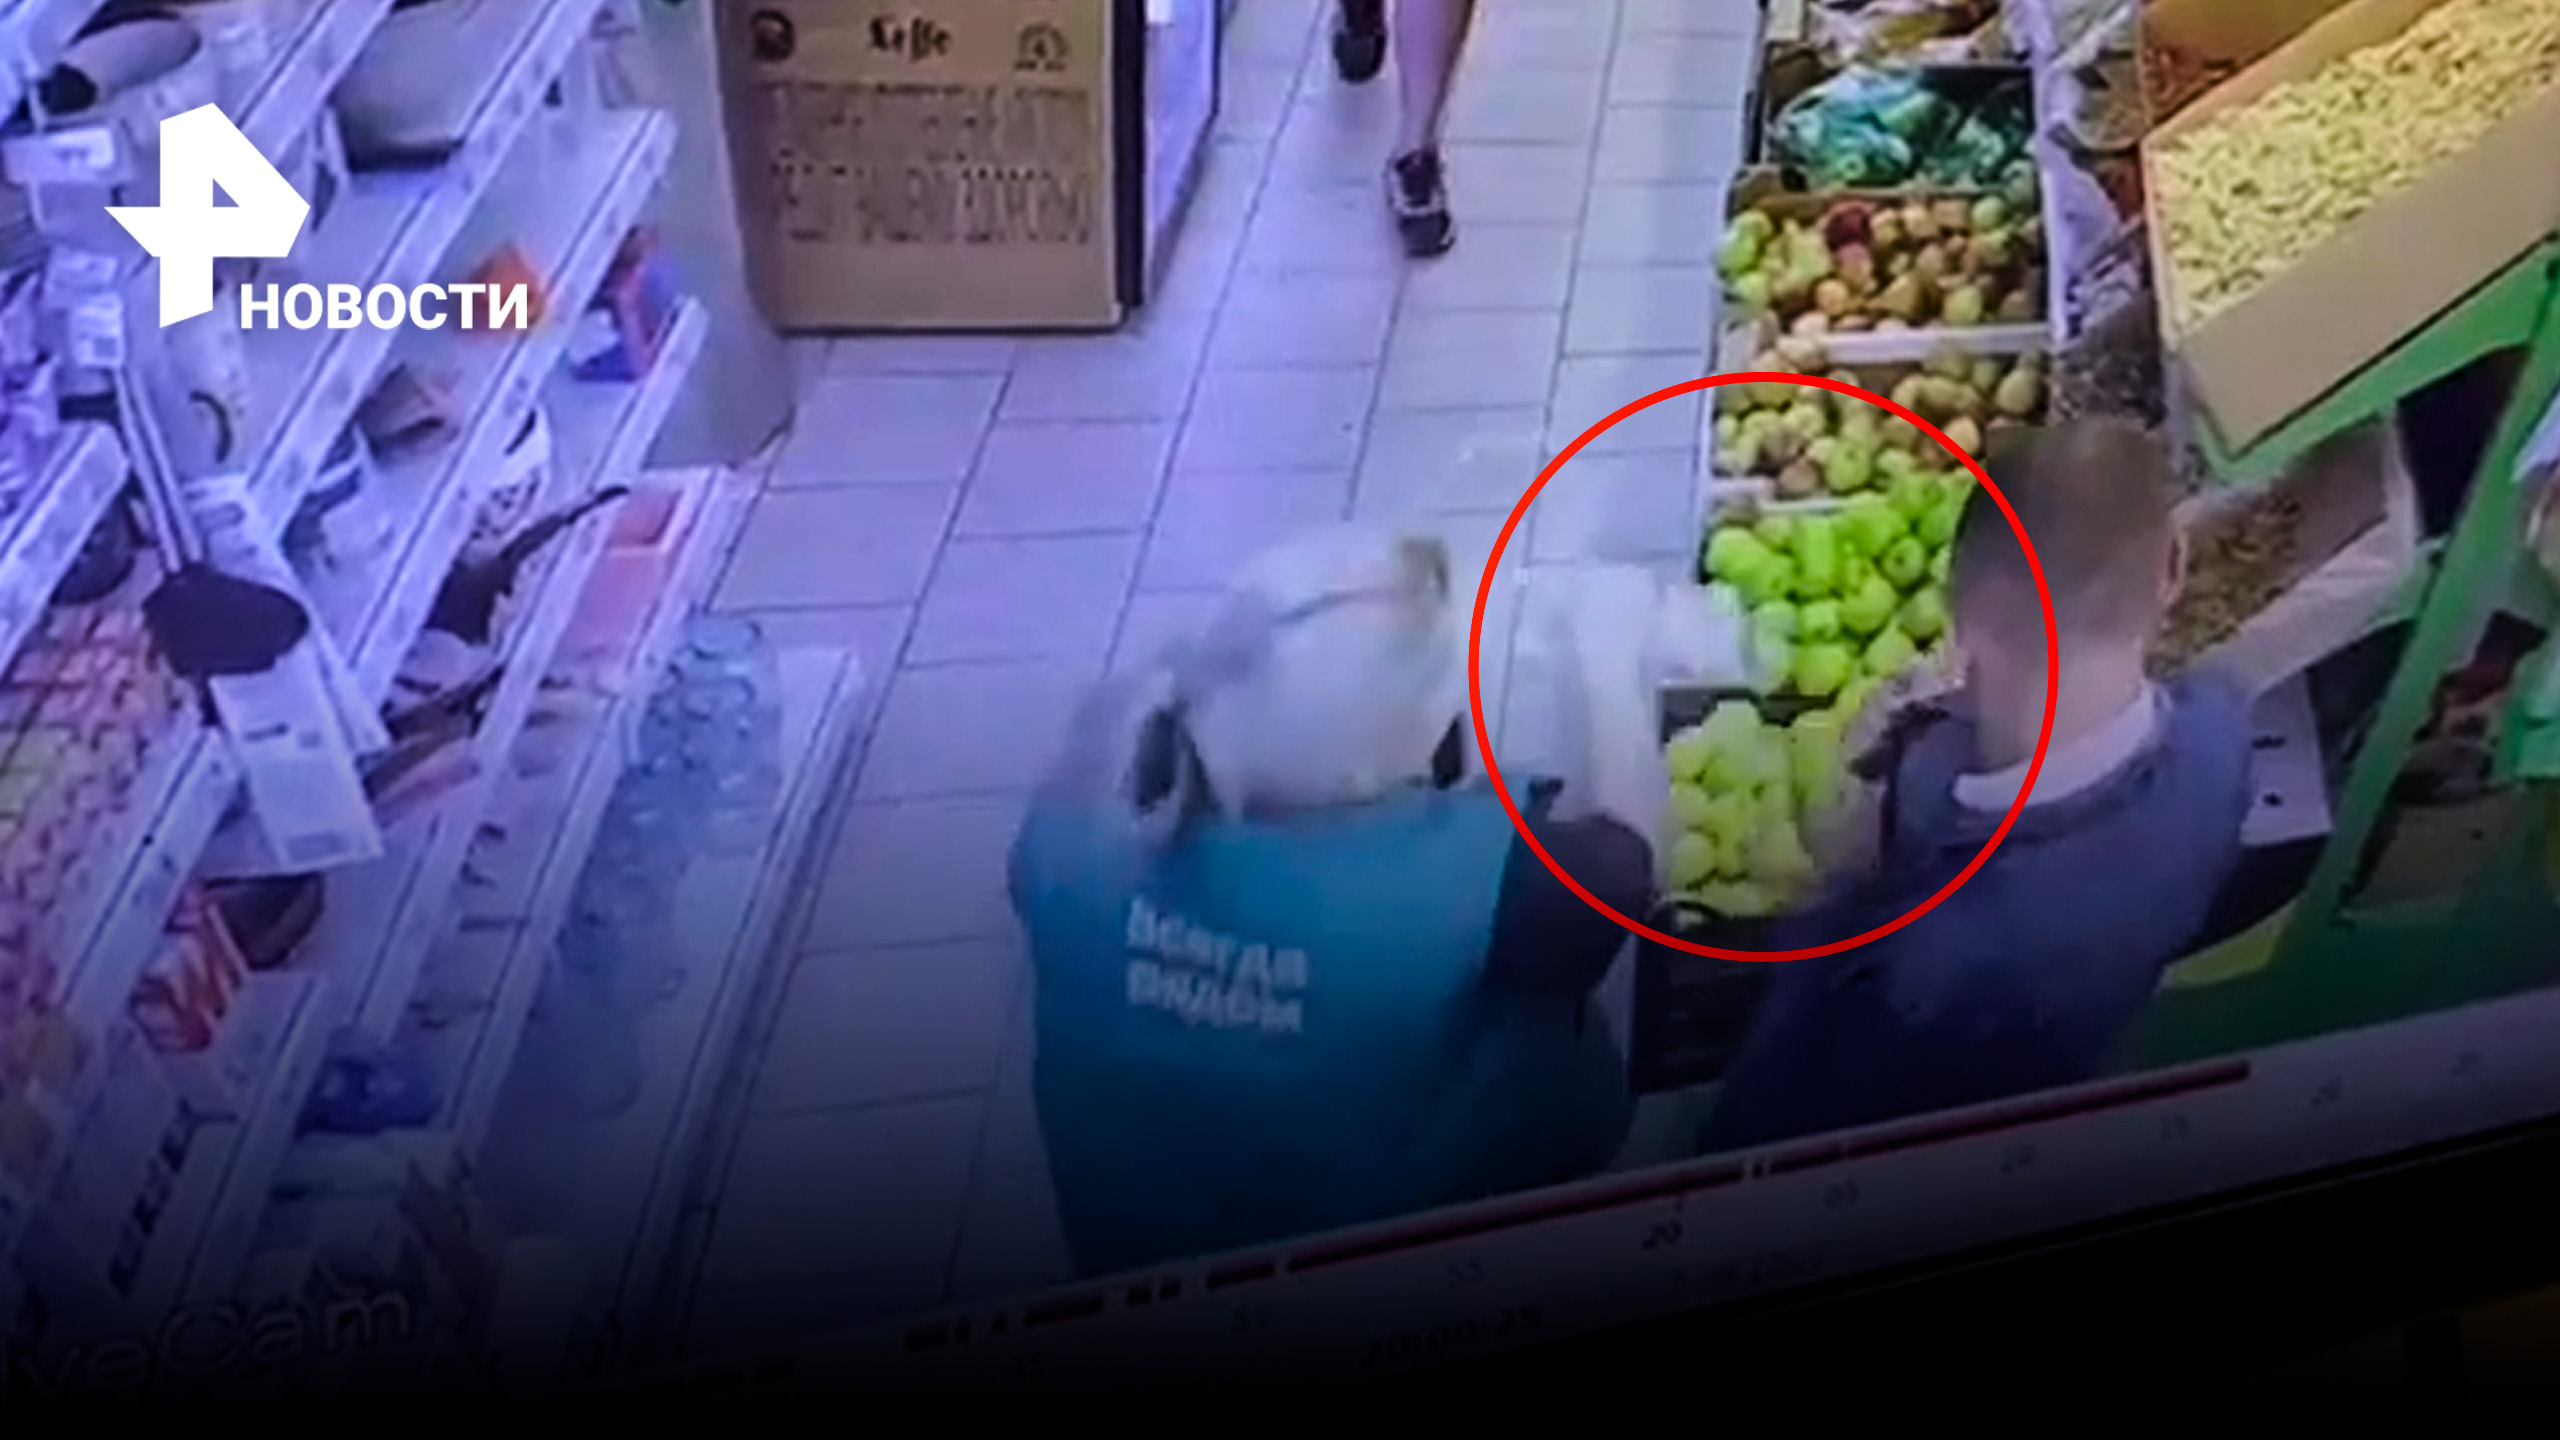 Операция "перехват": продавщица выхватила у вора бутылку водки, прежде чем он ее украл / РЕН Новости